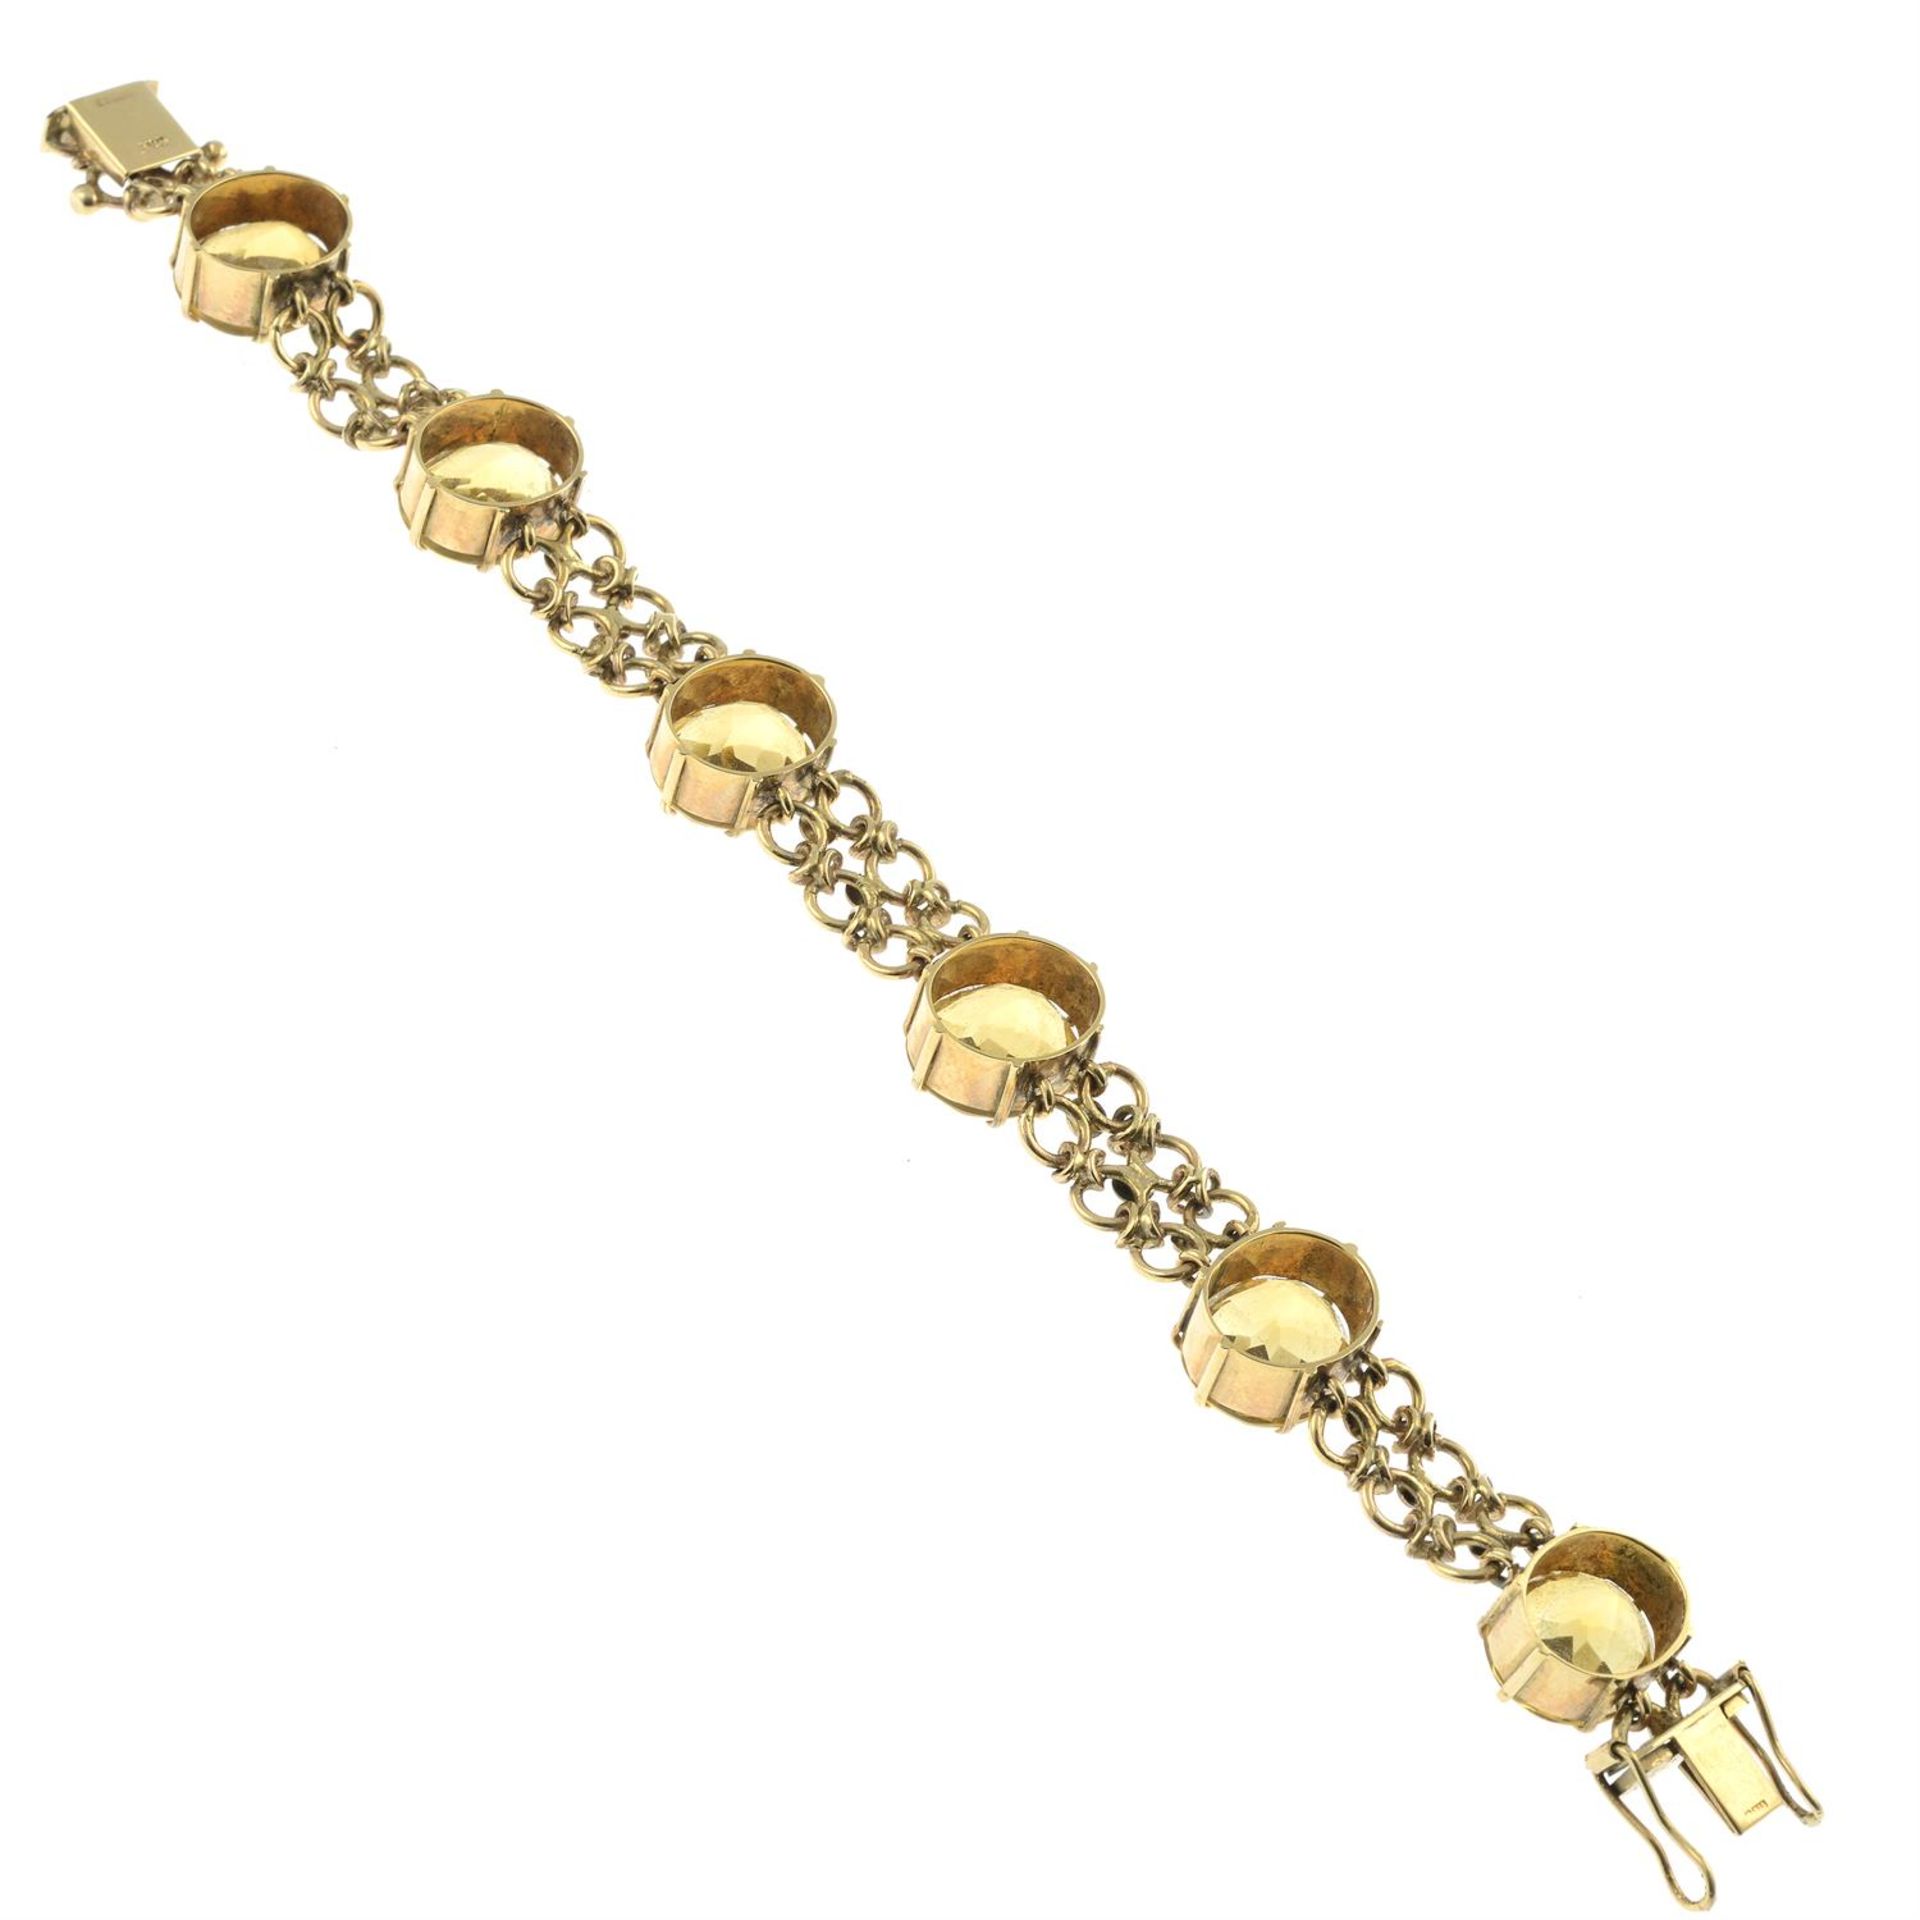 A 9ct gold citrine bracelet. - Image 2 of 2